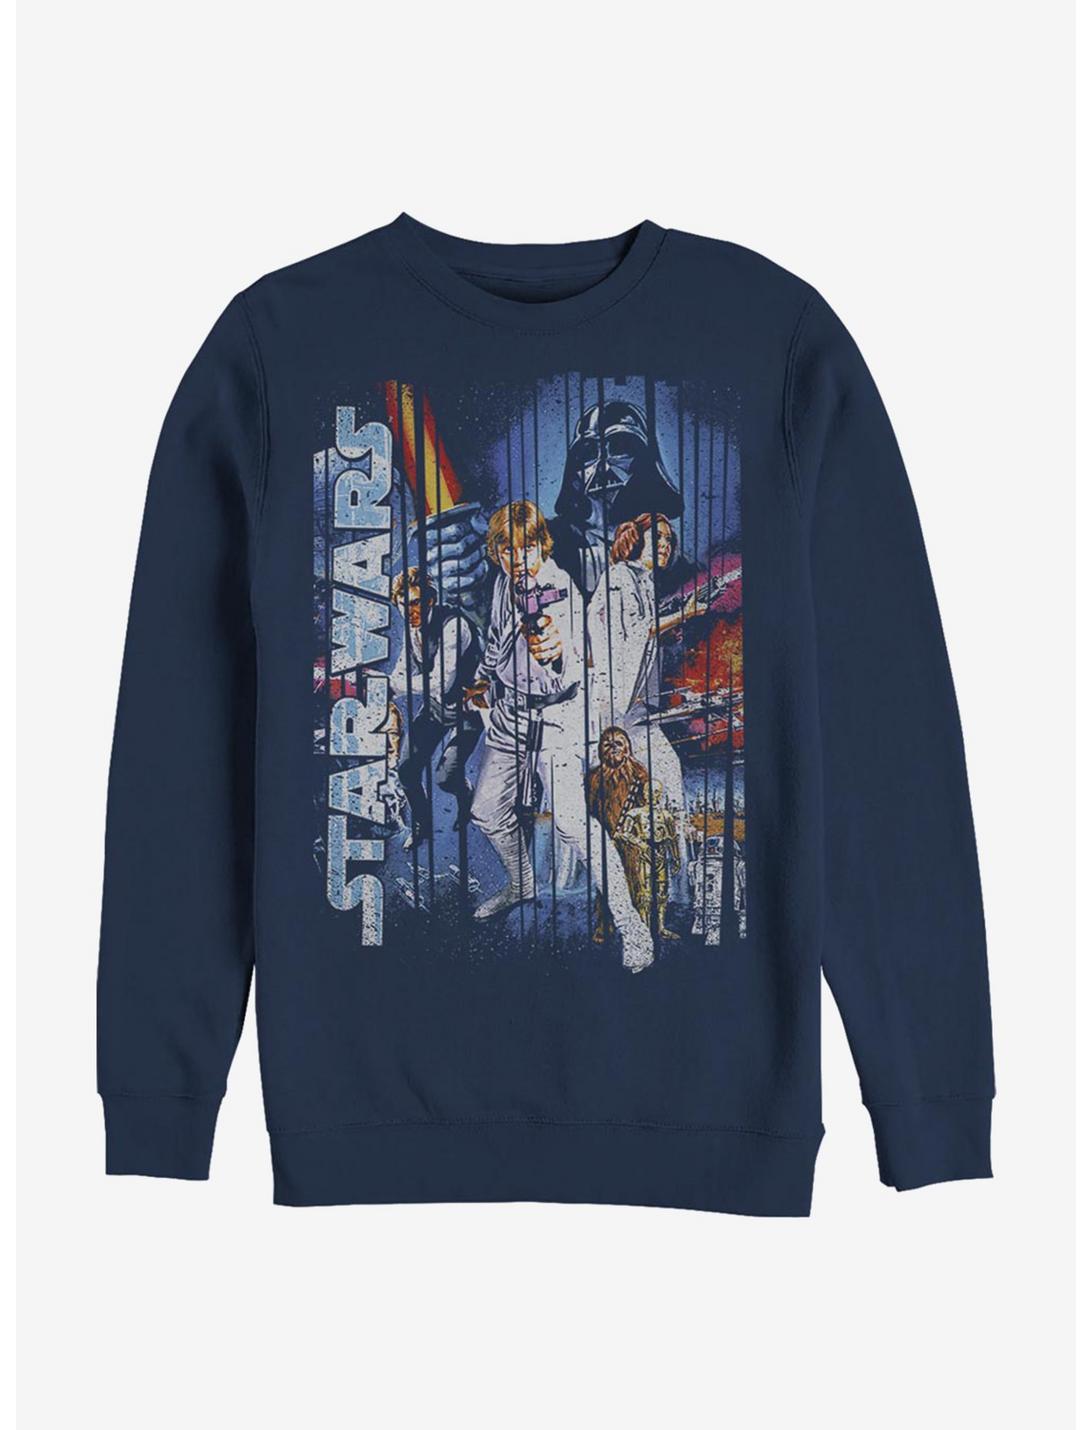 Star Wars Classic Scene Sweatshirt, NAVY, hi-res